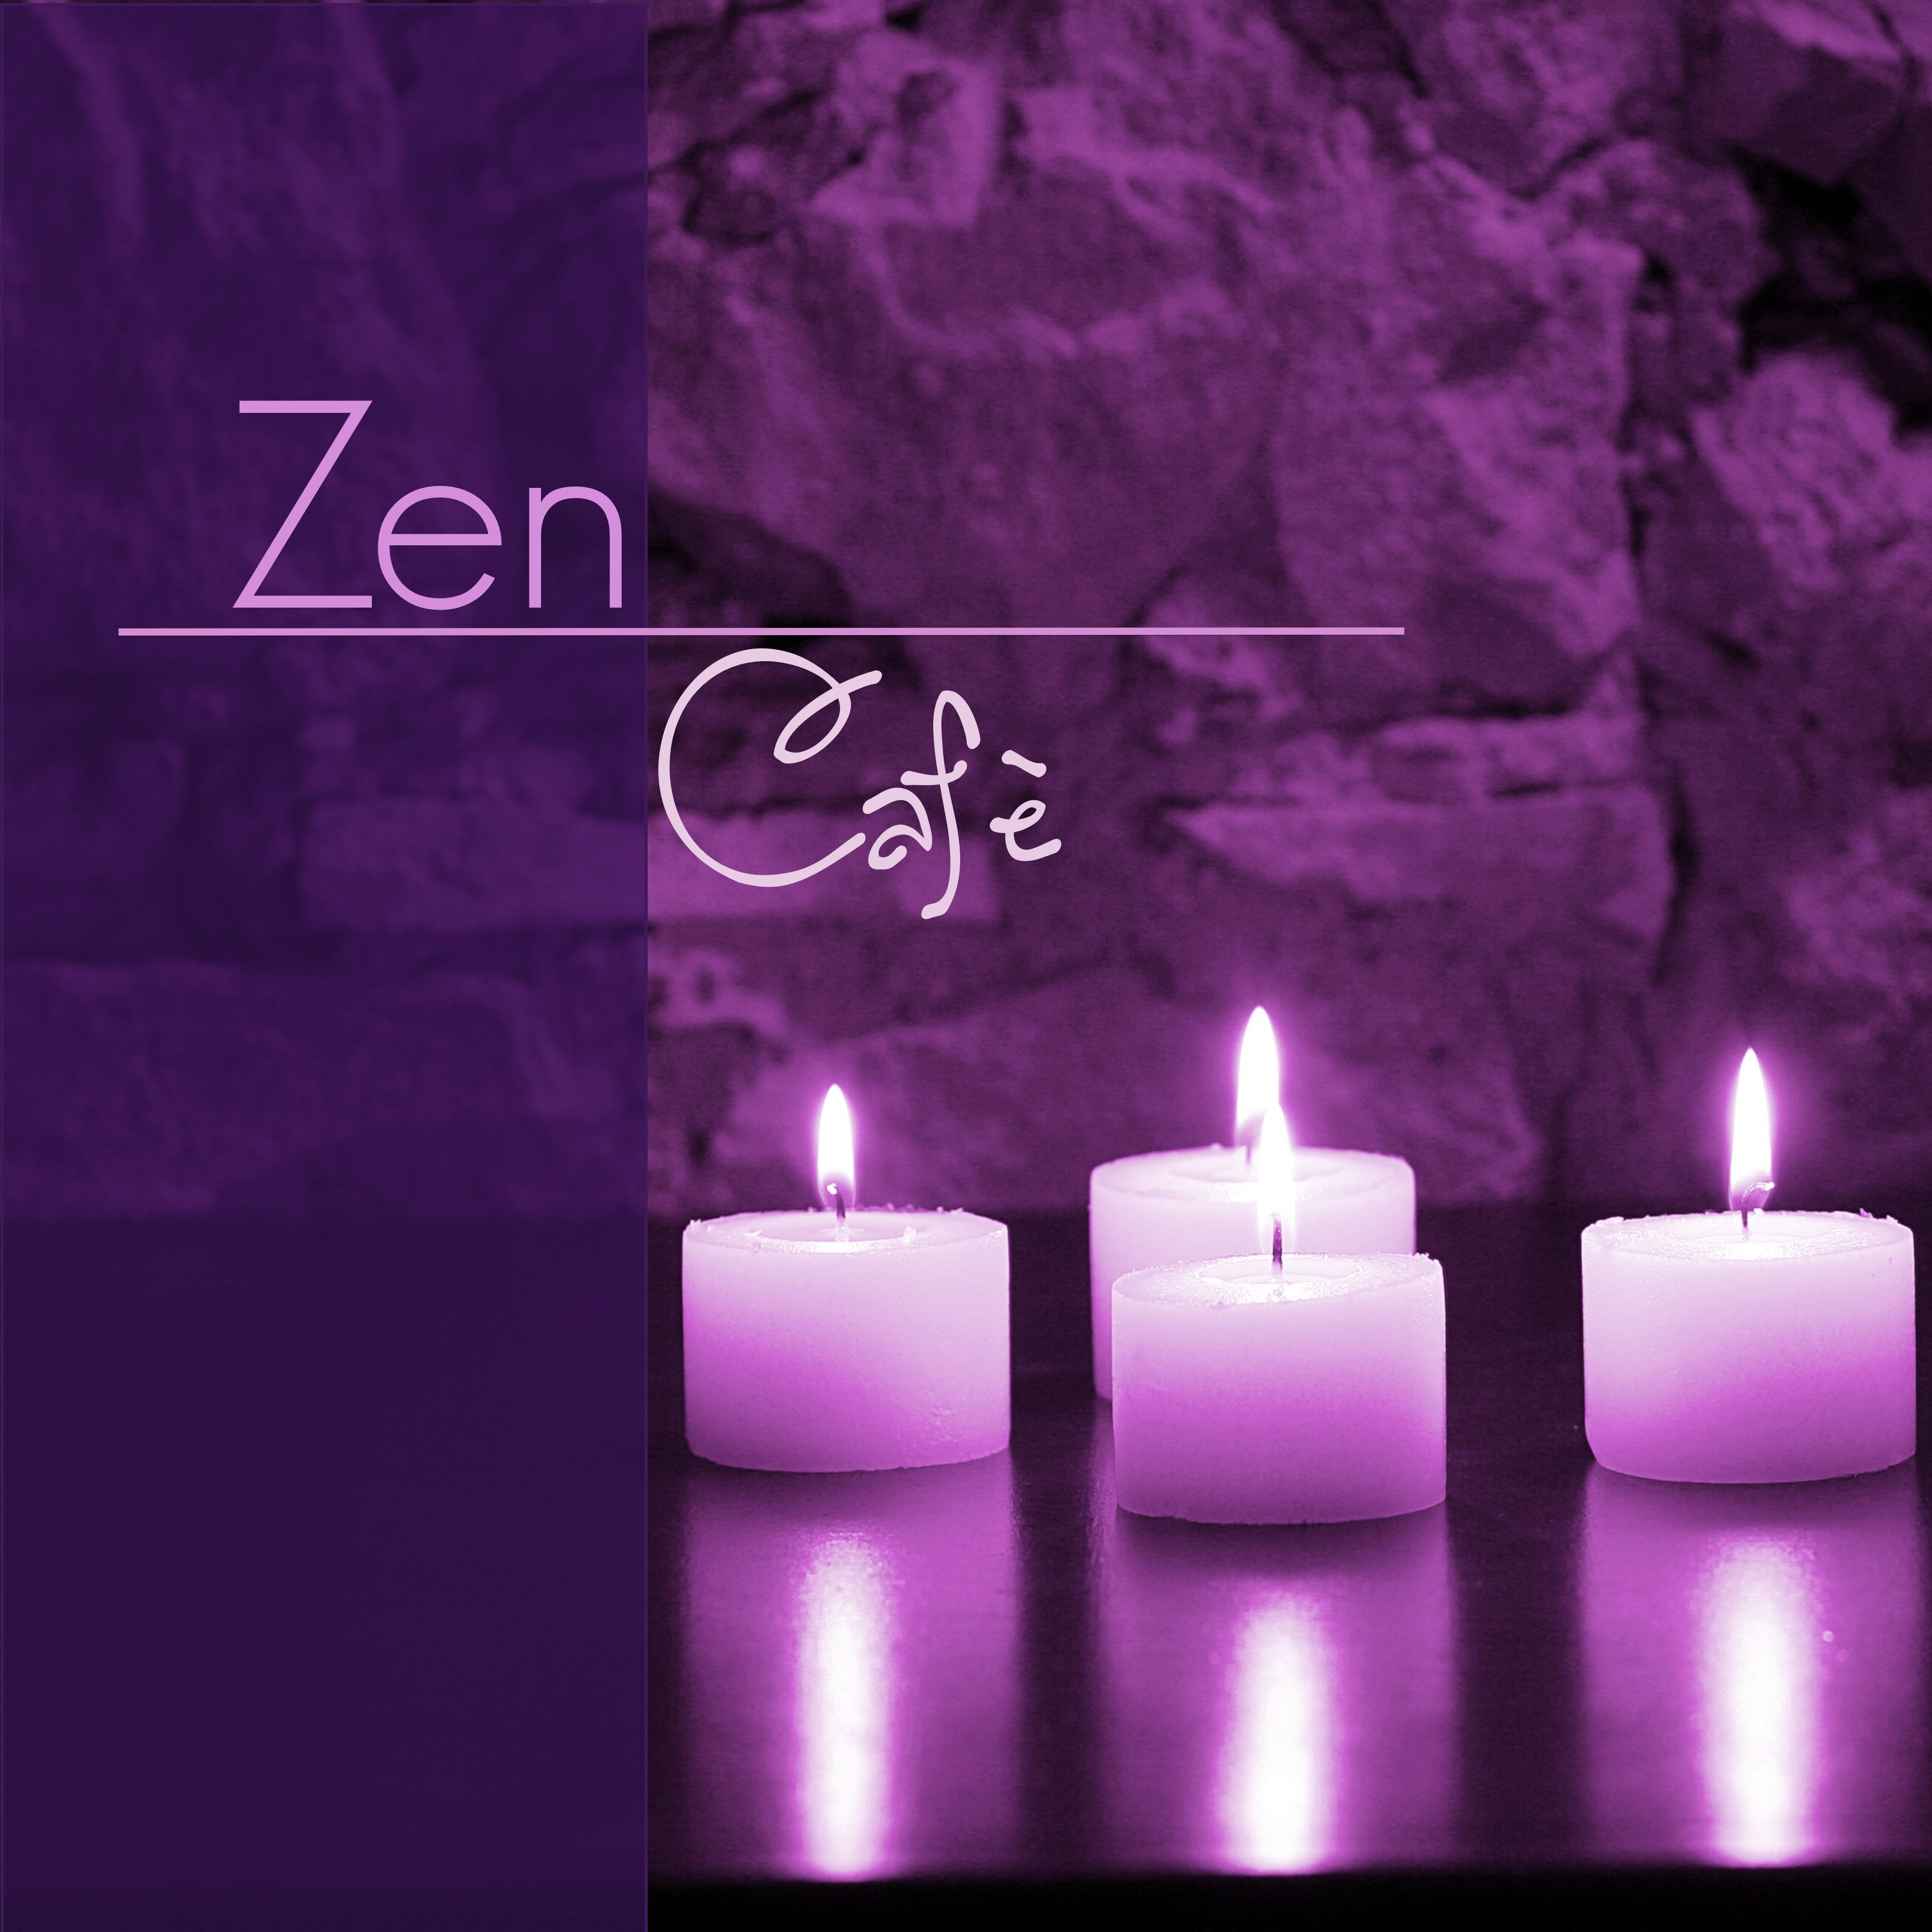 Zen Cafe  Relaxing Meditation Music  Zen Garden Music for Buddhist Meditation Techniques and Healing Mantras